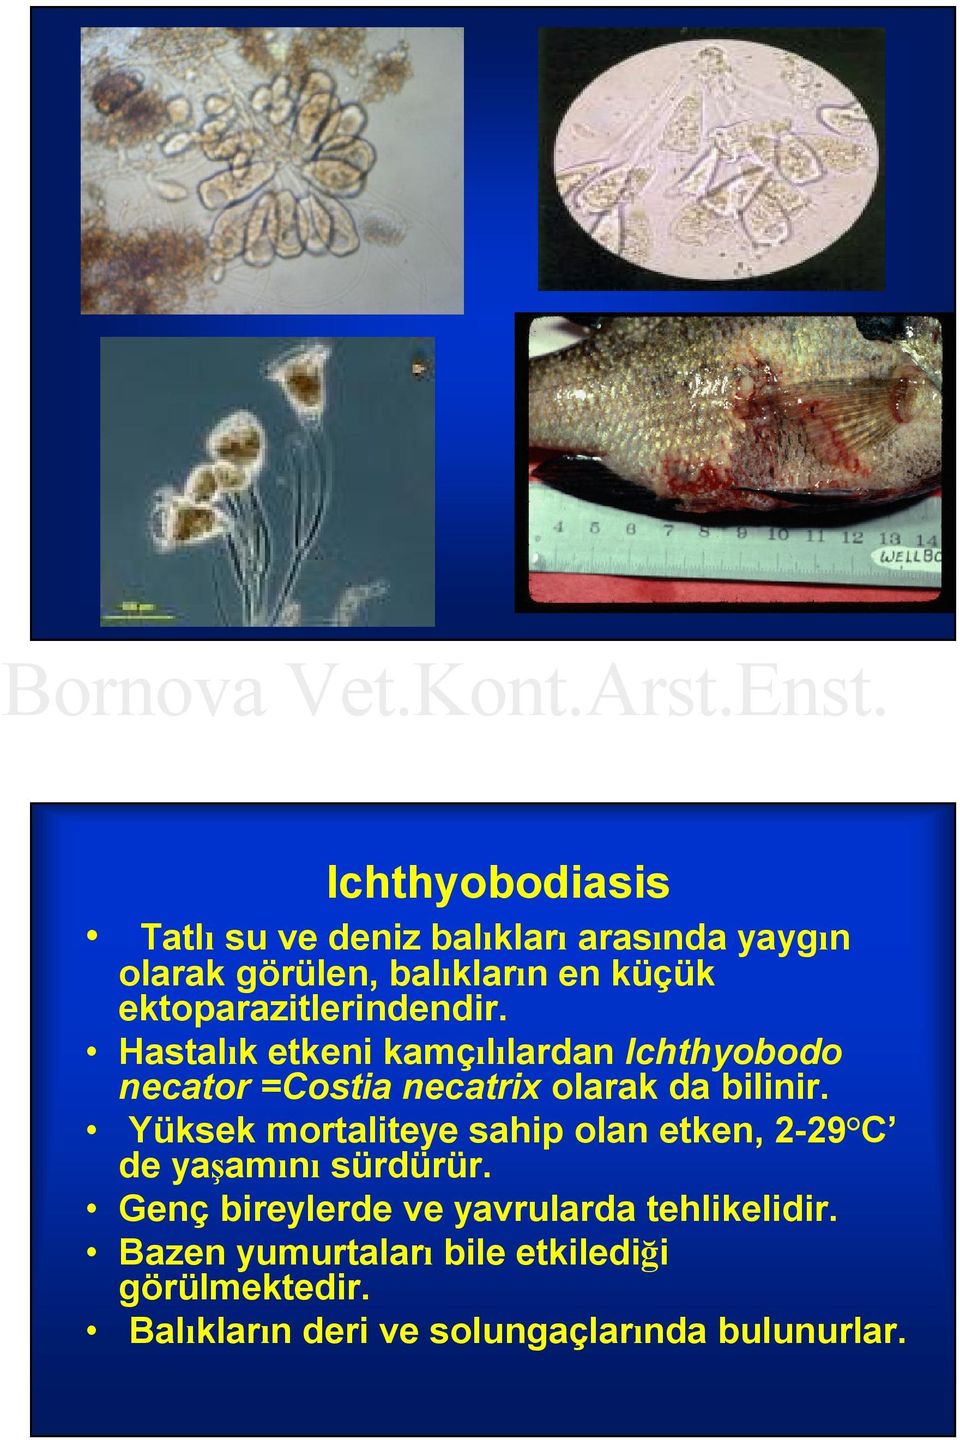 Hastalık etkeni kamçılılardan Ichthyobodo necator =Costia necatrix olarak da bilinir.